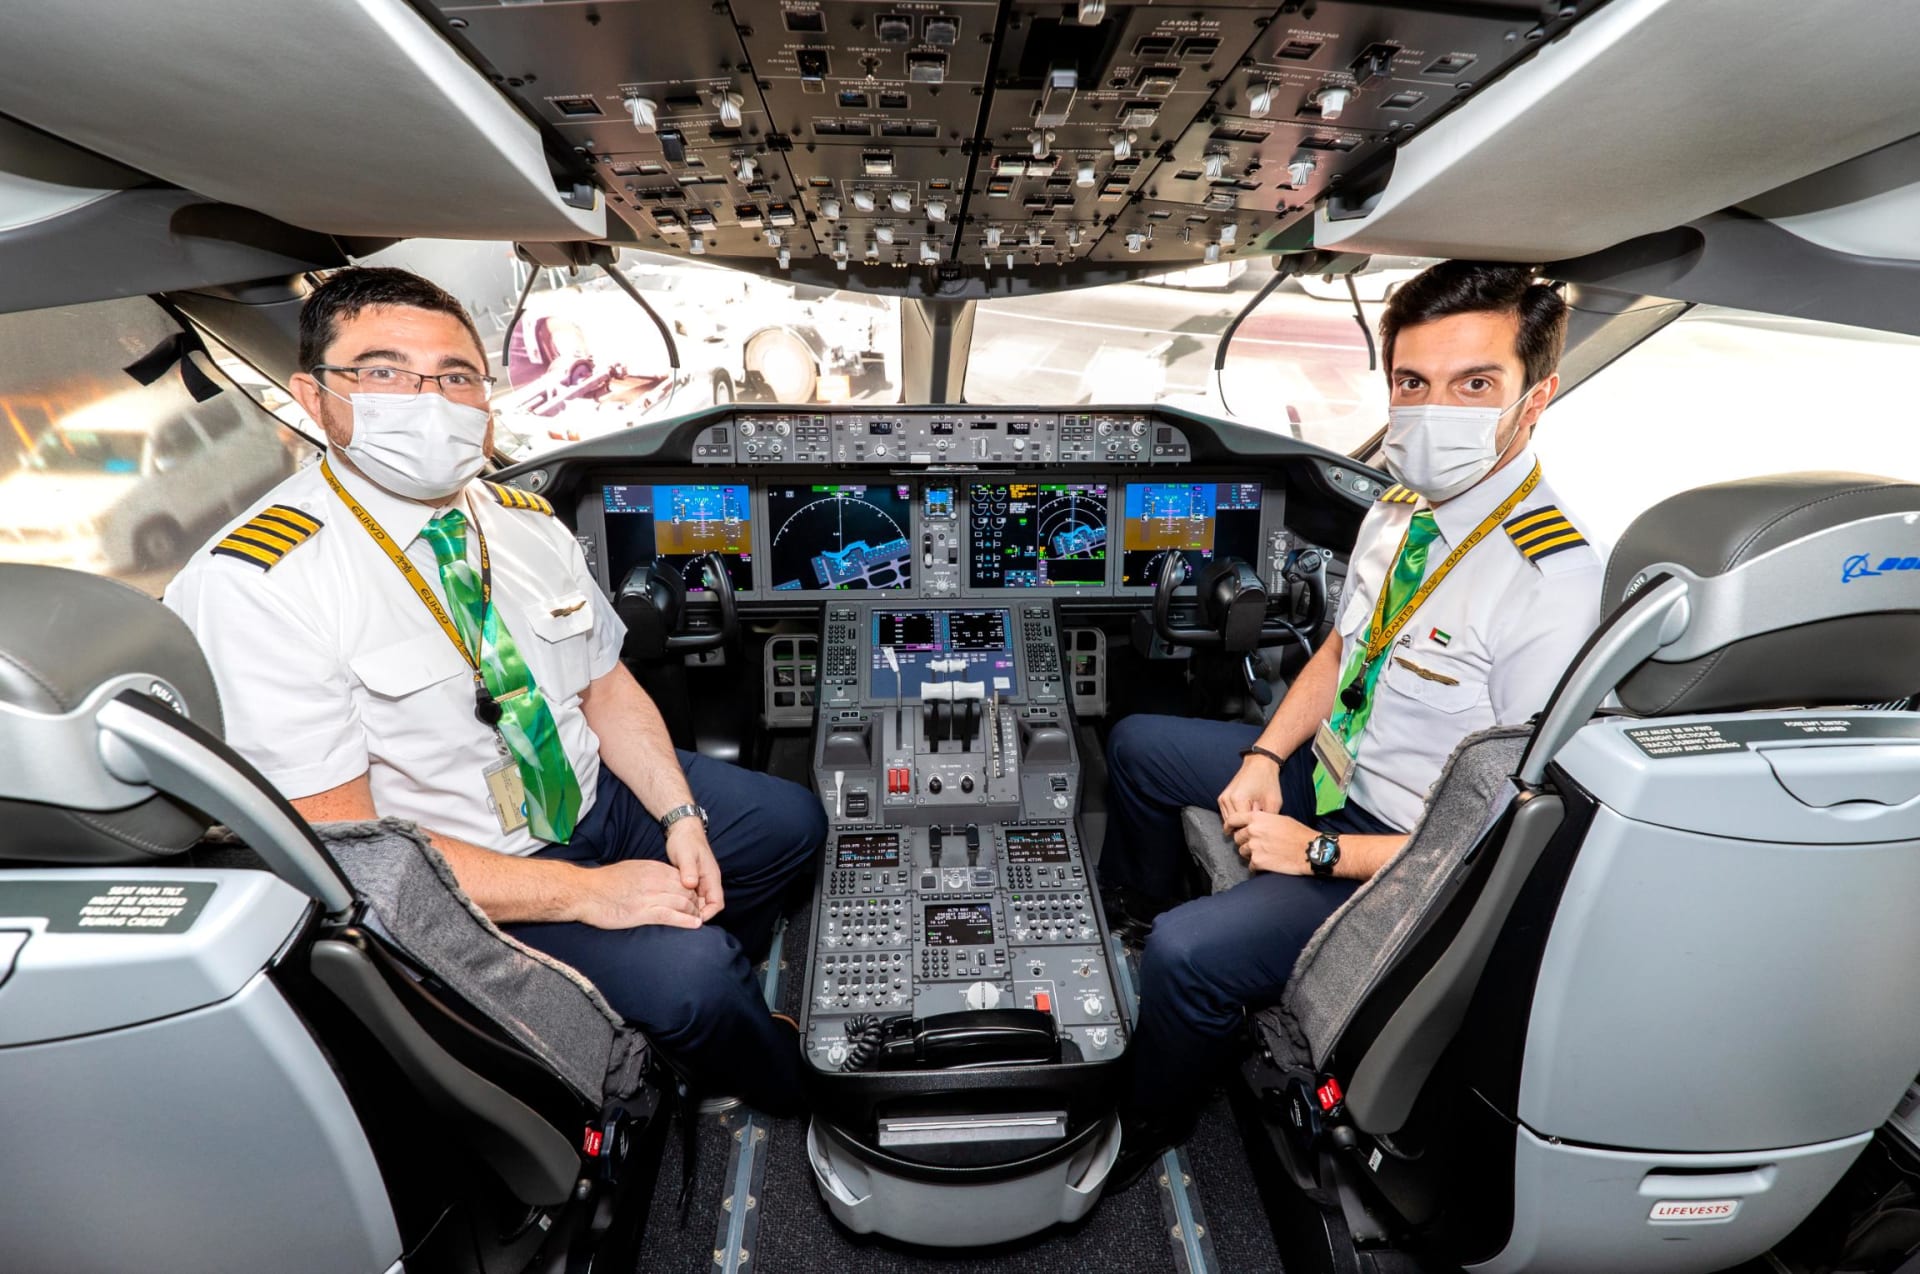 Una iniciativa de Etihad Airways que ofrece un vistazo a un futuro más sostenible para los viajes aéreos